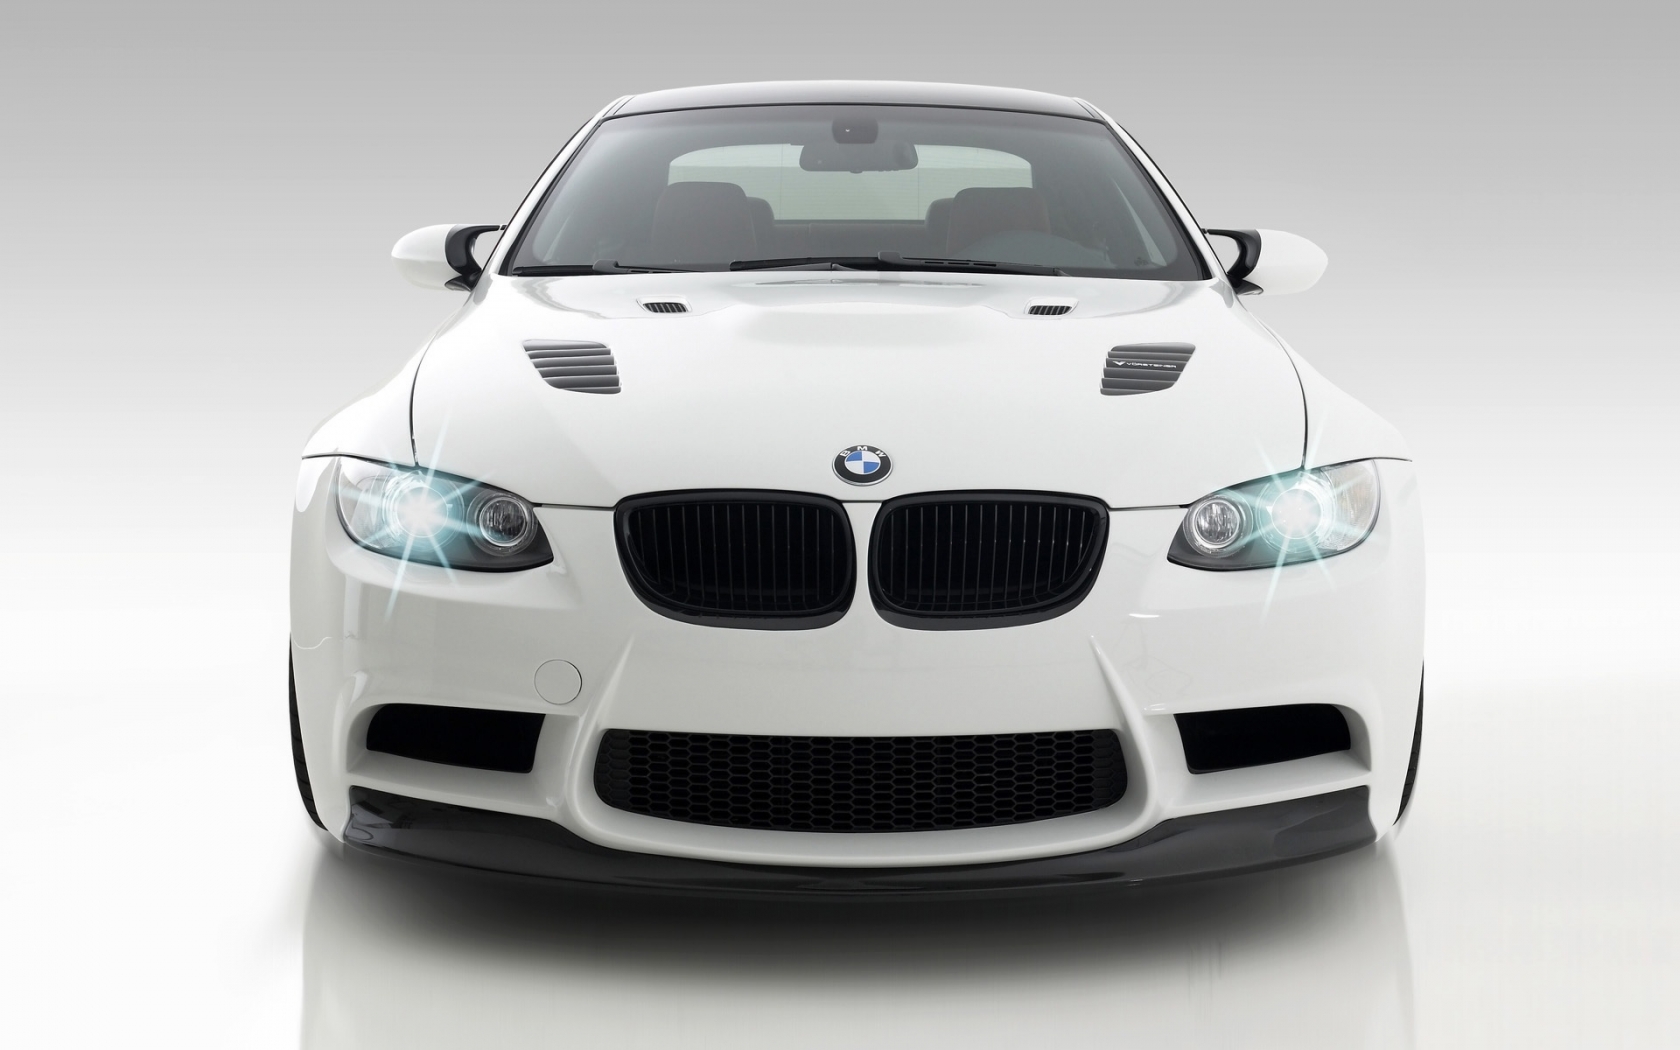 Vorsteiner GTS3 BMW M3 Front 2009 for 1680 x 1050 widescreen resolution